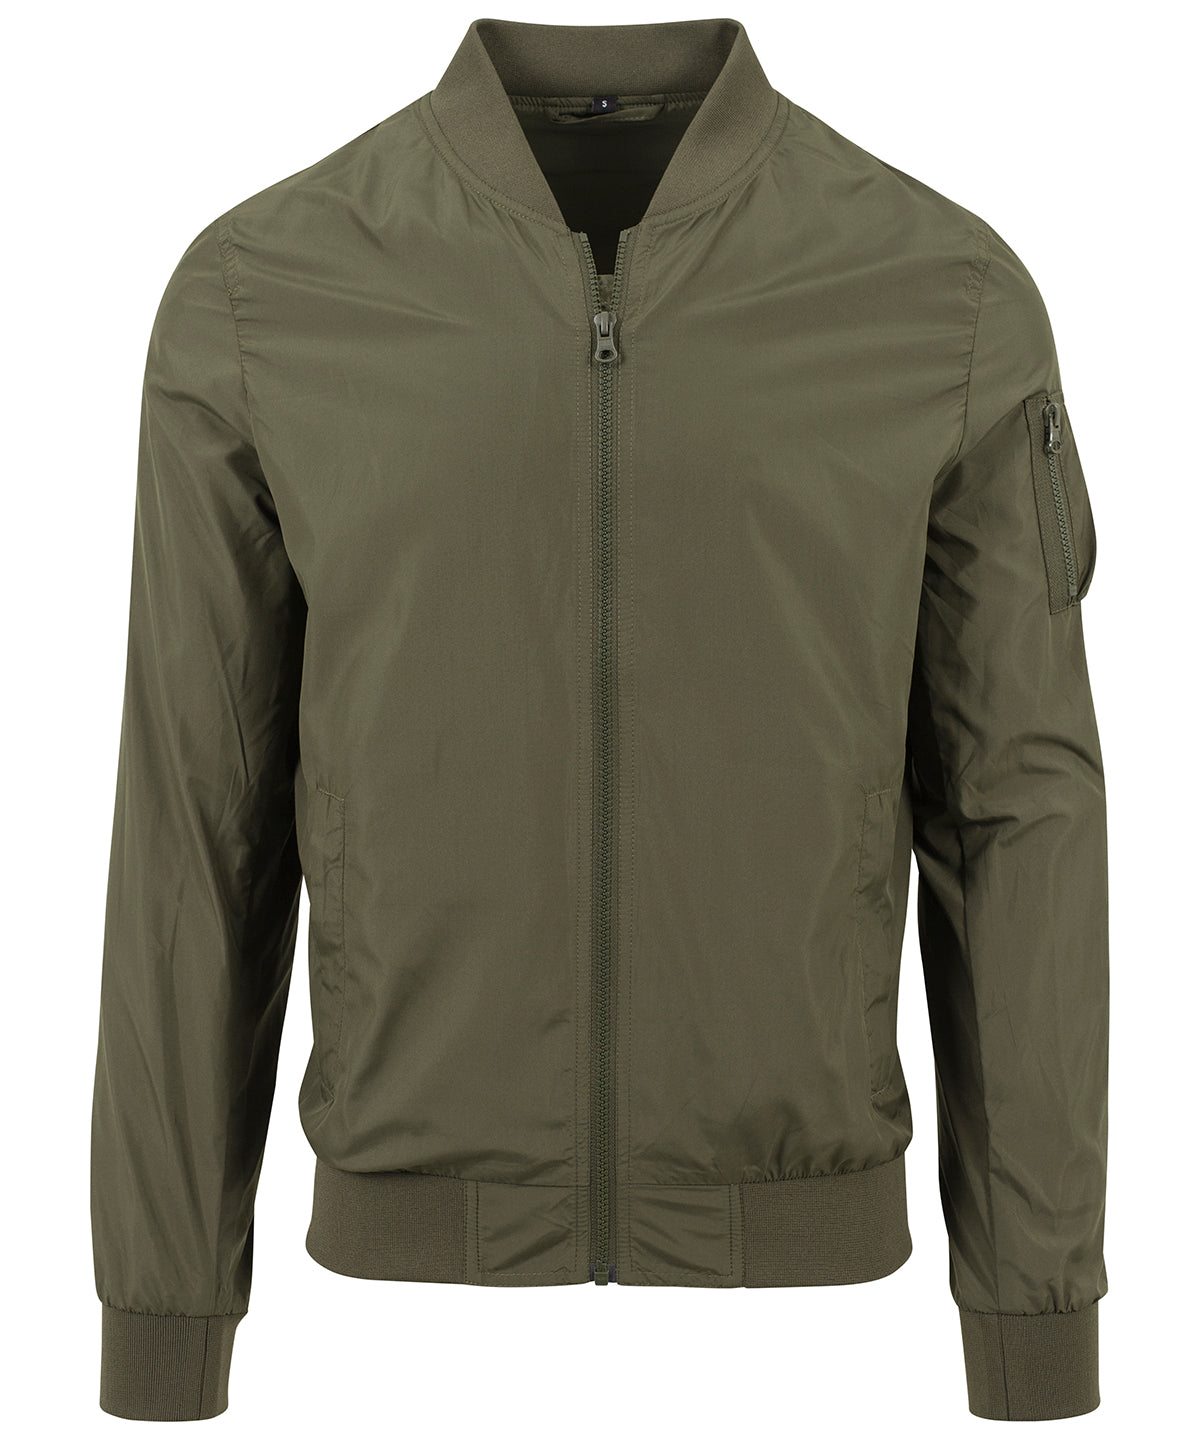 Personalised Jackets - Black Build Your Brand Nylon bomber jacket